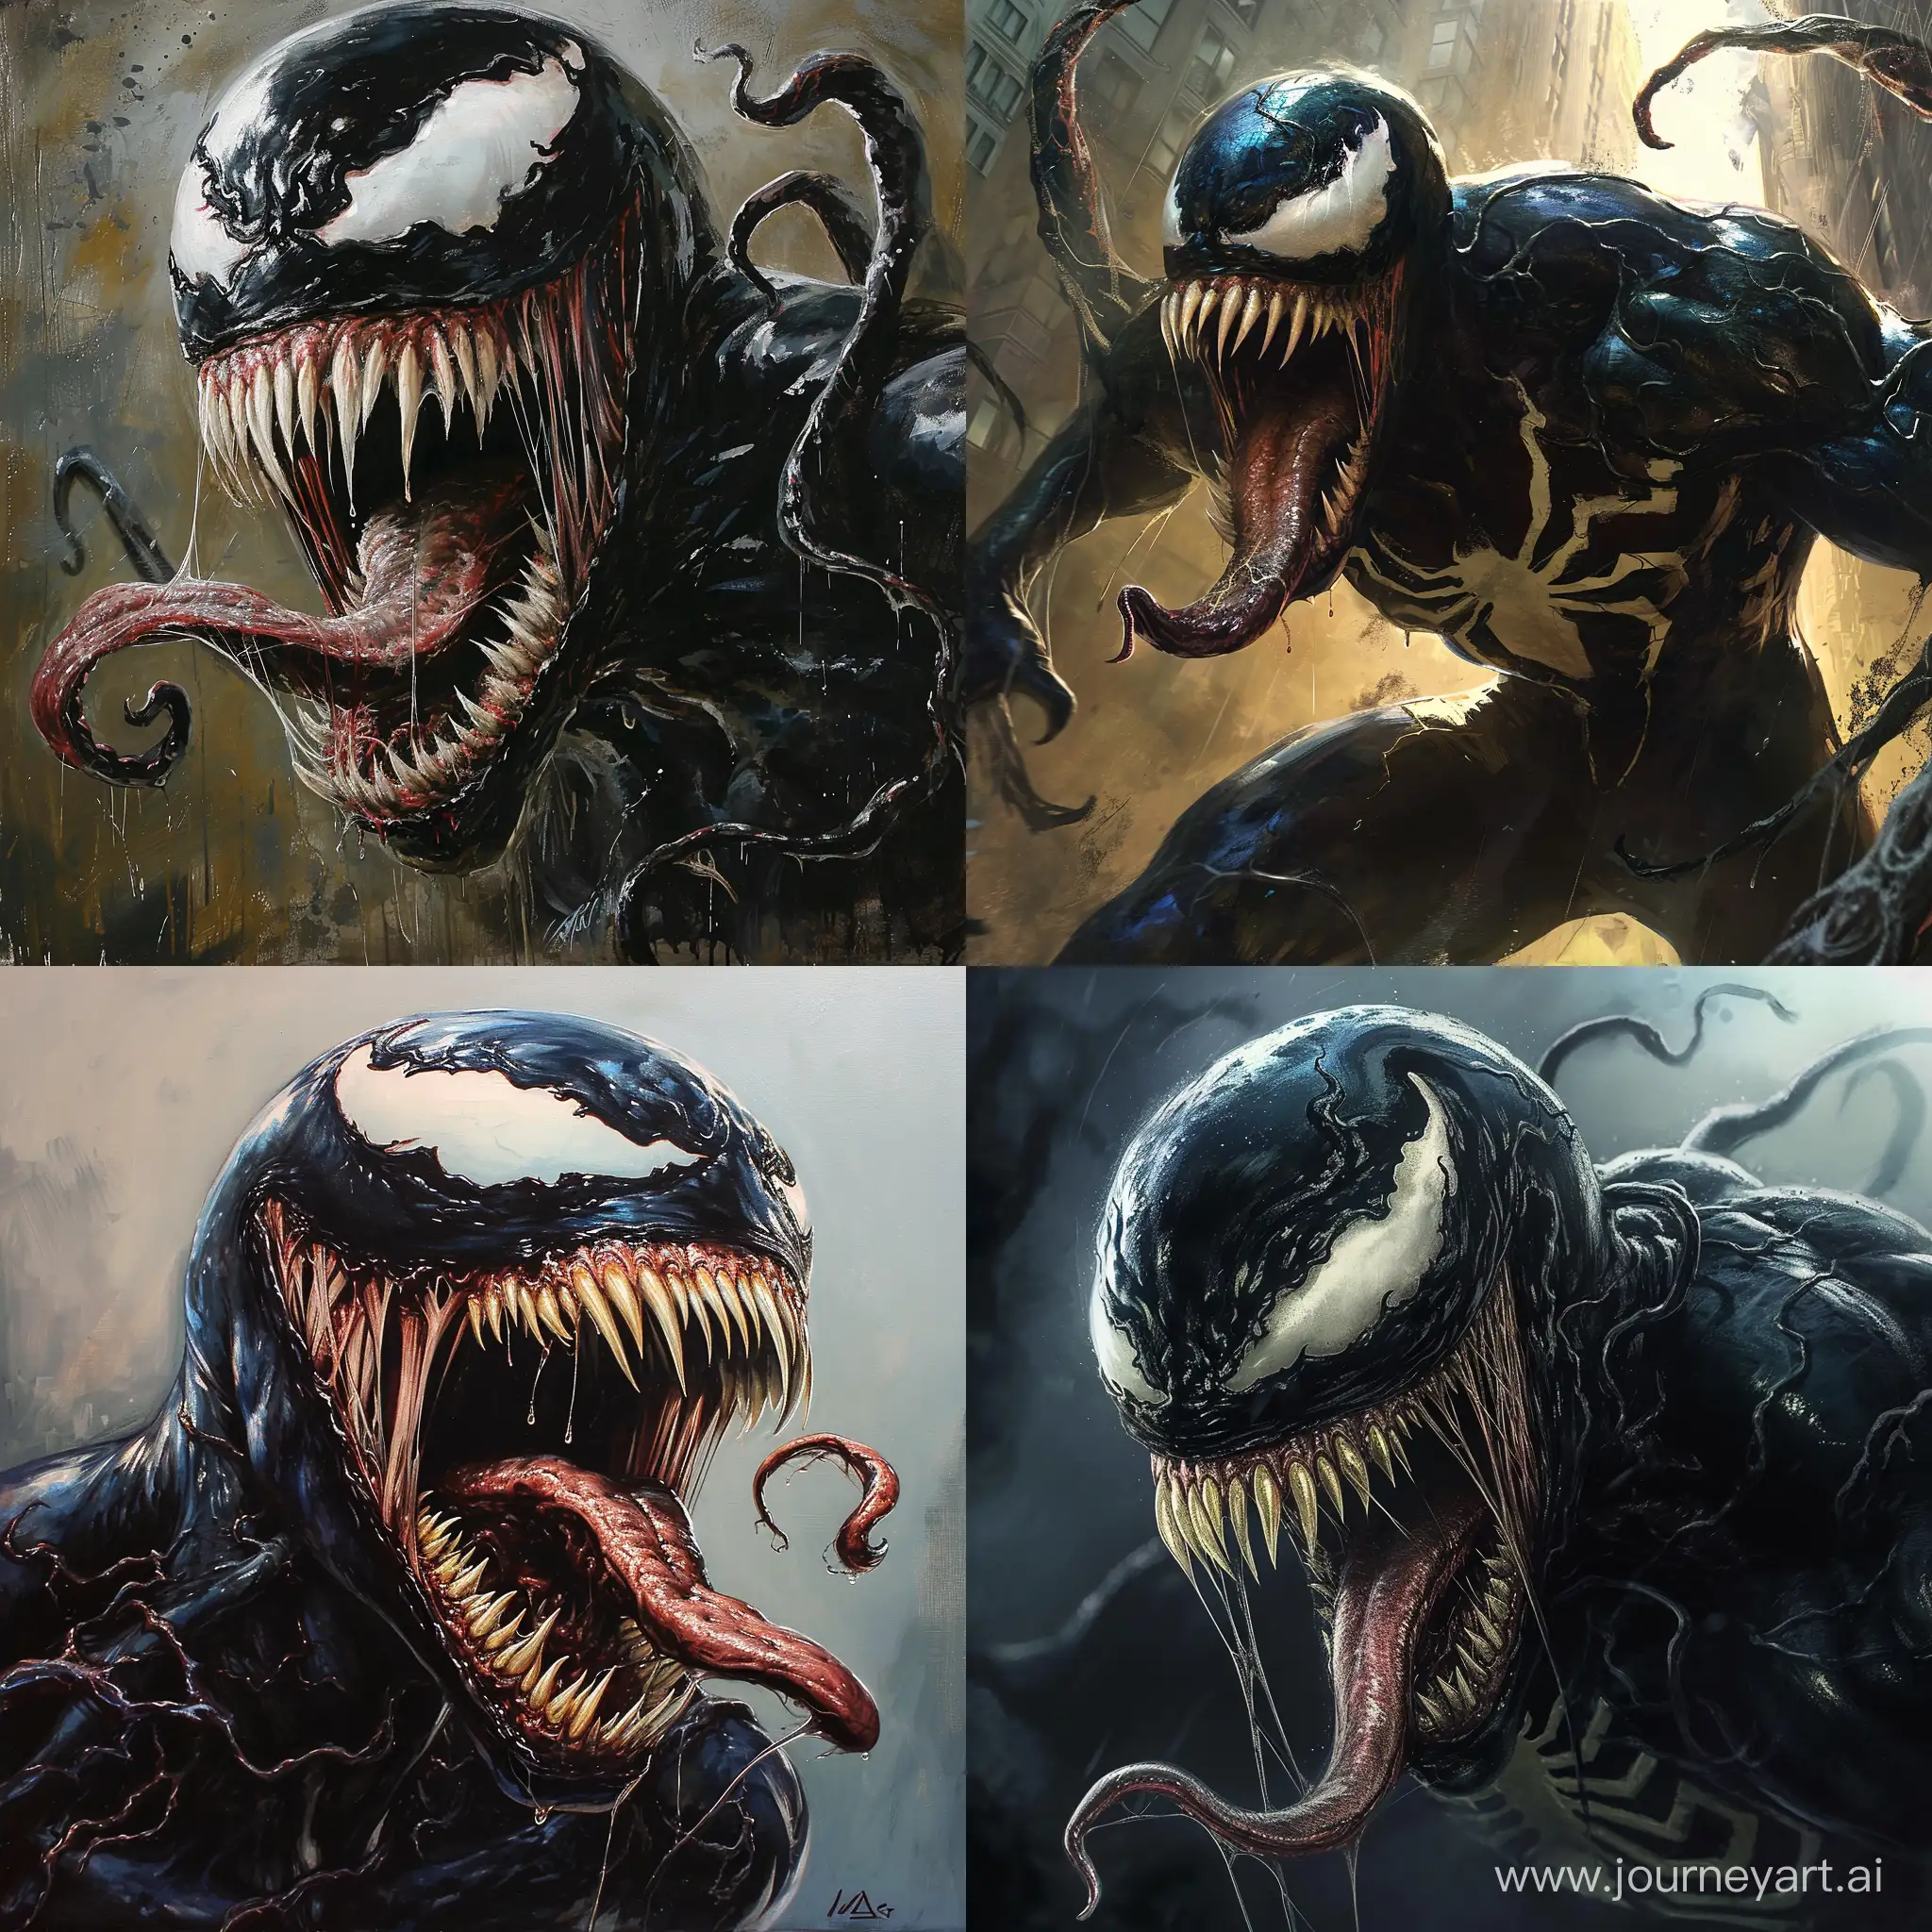 Sinister-Venomous-Creature-in-Virtual-Realm